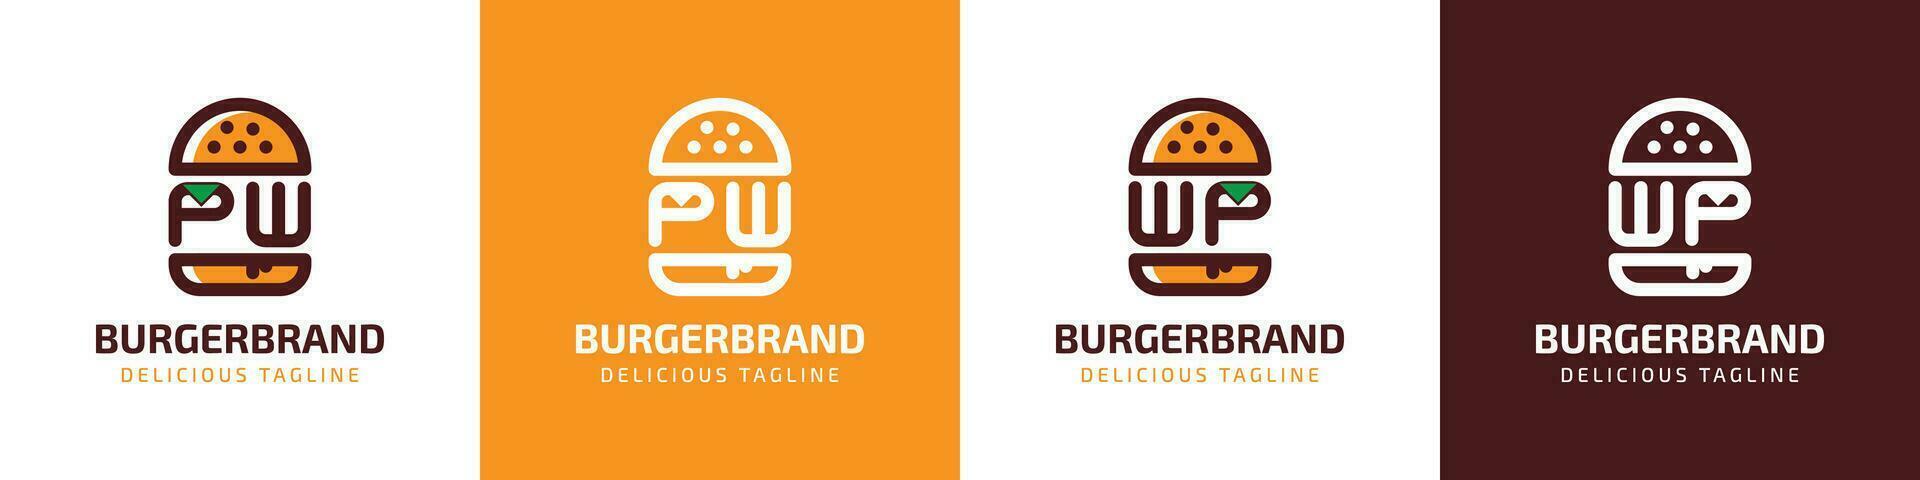 brief pw en wp hamburger logo, geschikt voor ieder bedrijf verwant naar hamburger met pw of wp initialen. vector